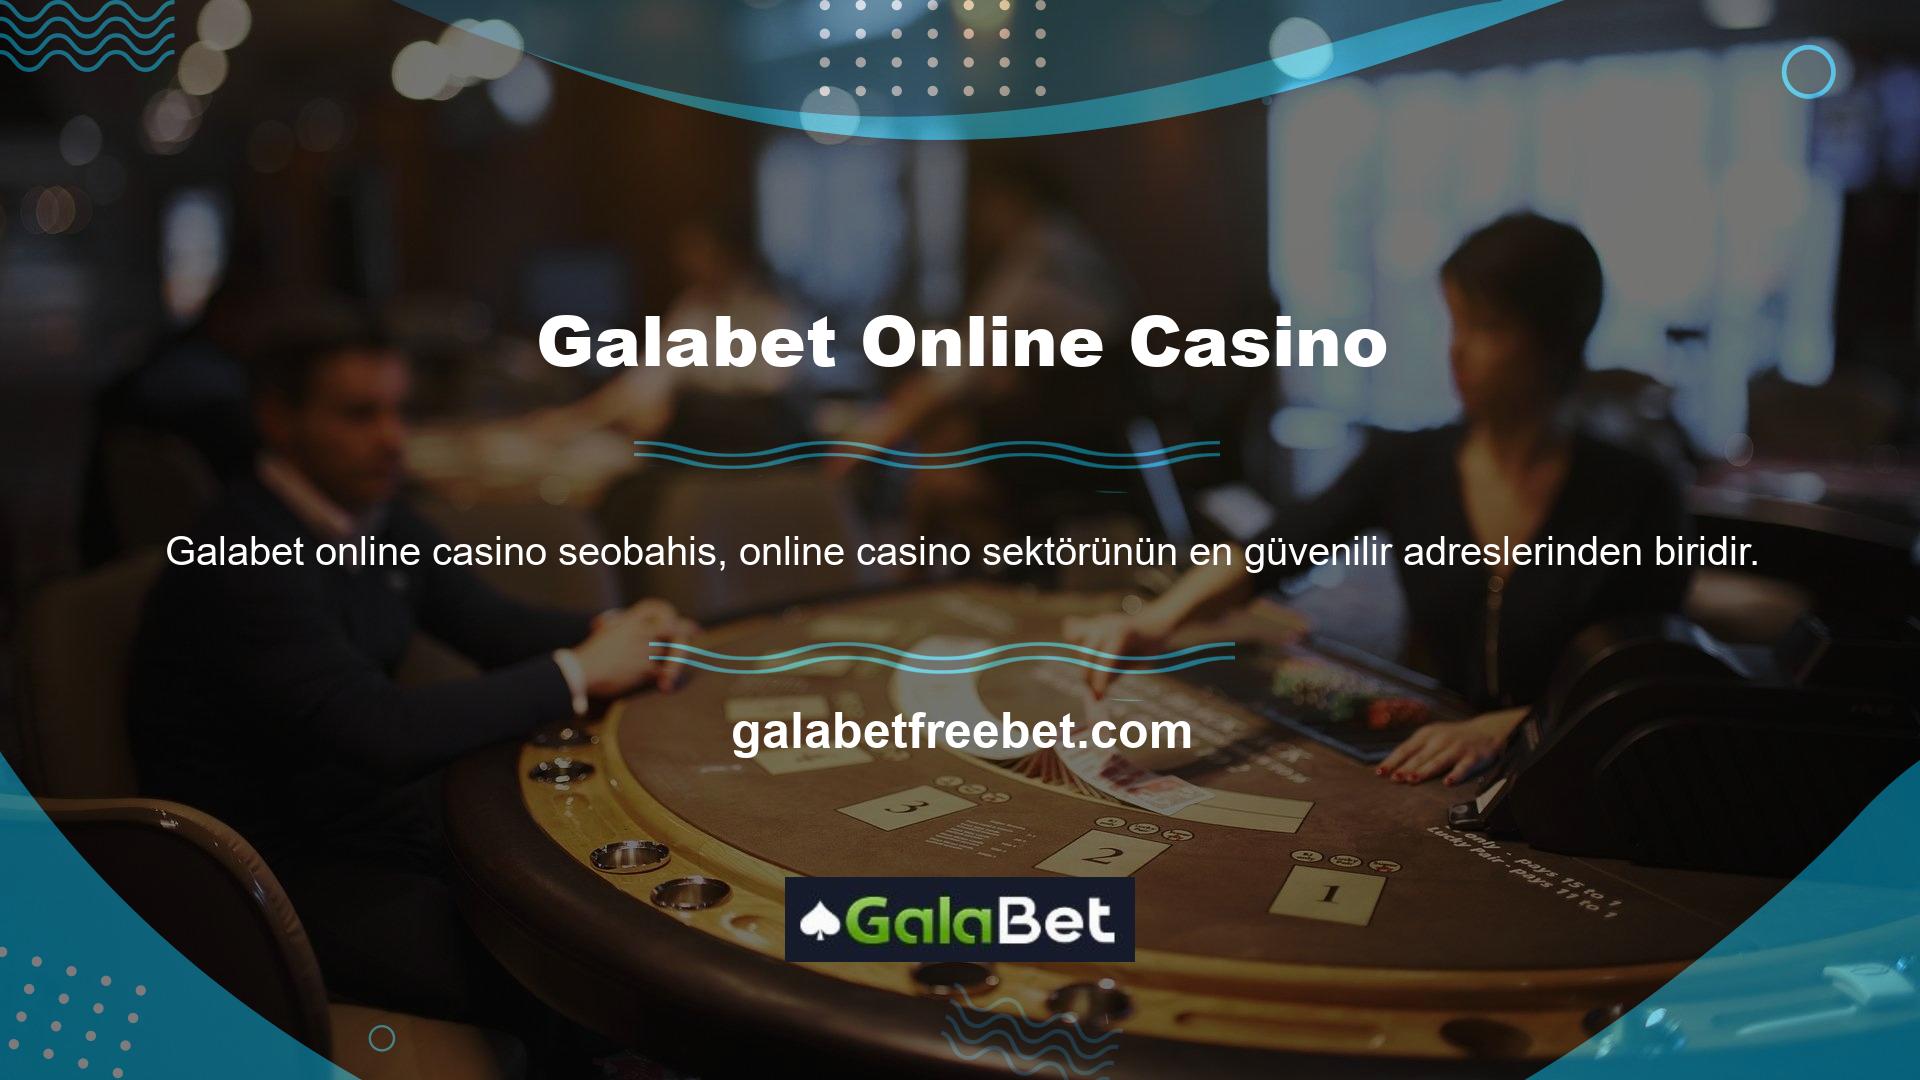 Türk casino pazarına girişi başlangıçta Galabet olarak yapılmıştır